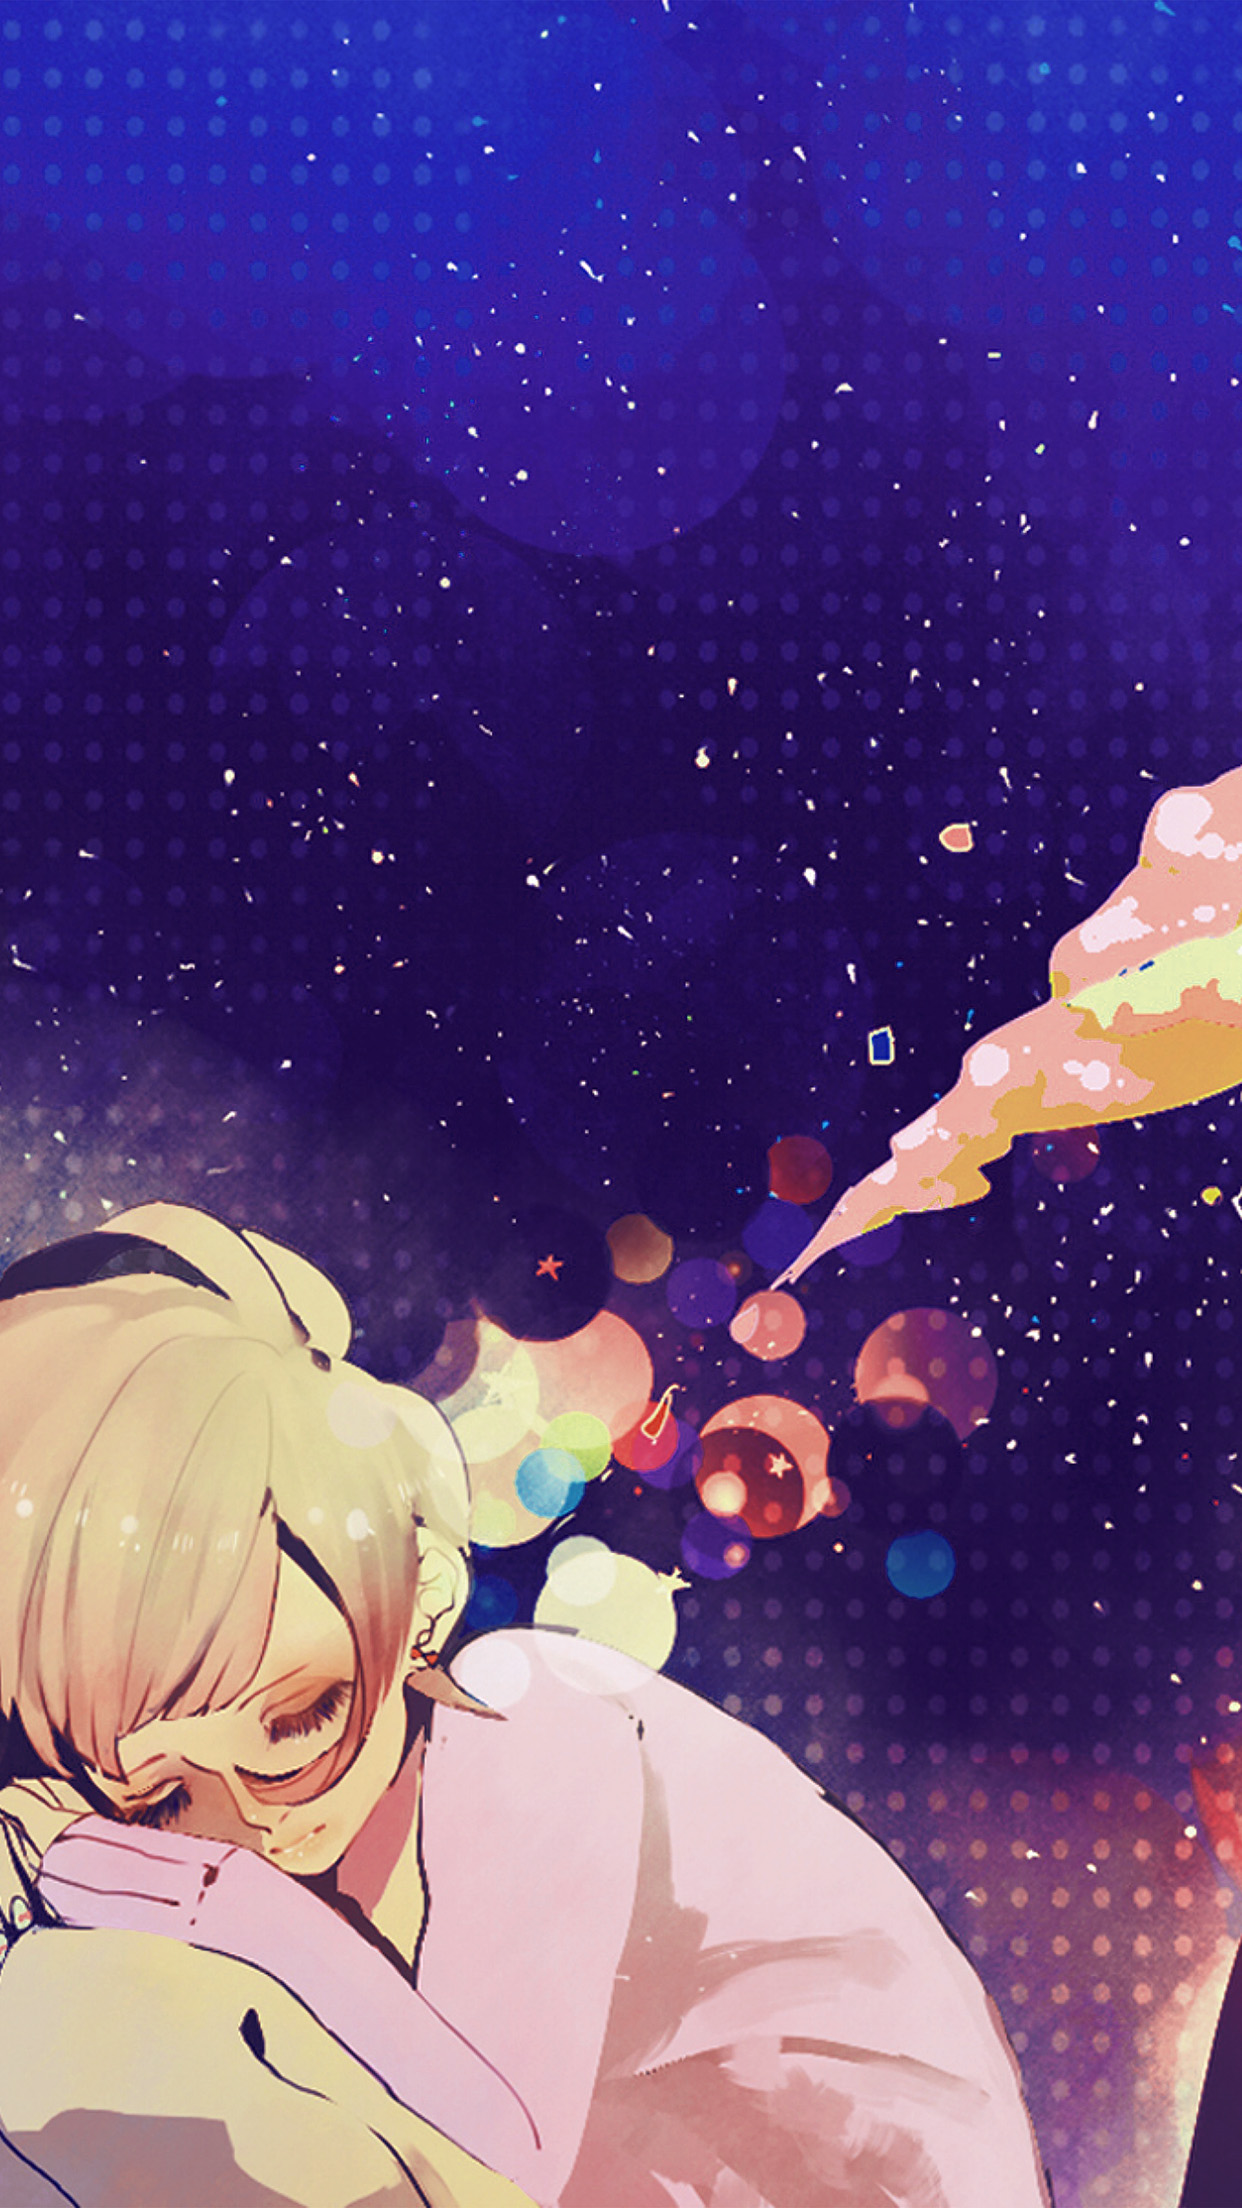 Sleeping Girl Anime Art Illustration Blue Android wallpaper